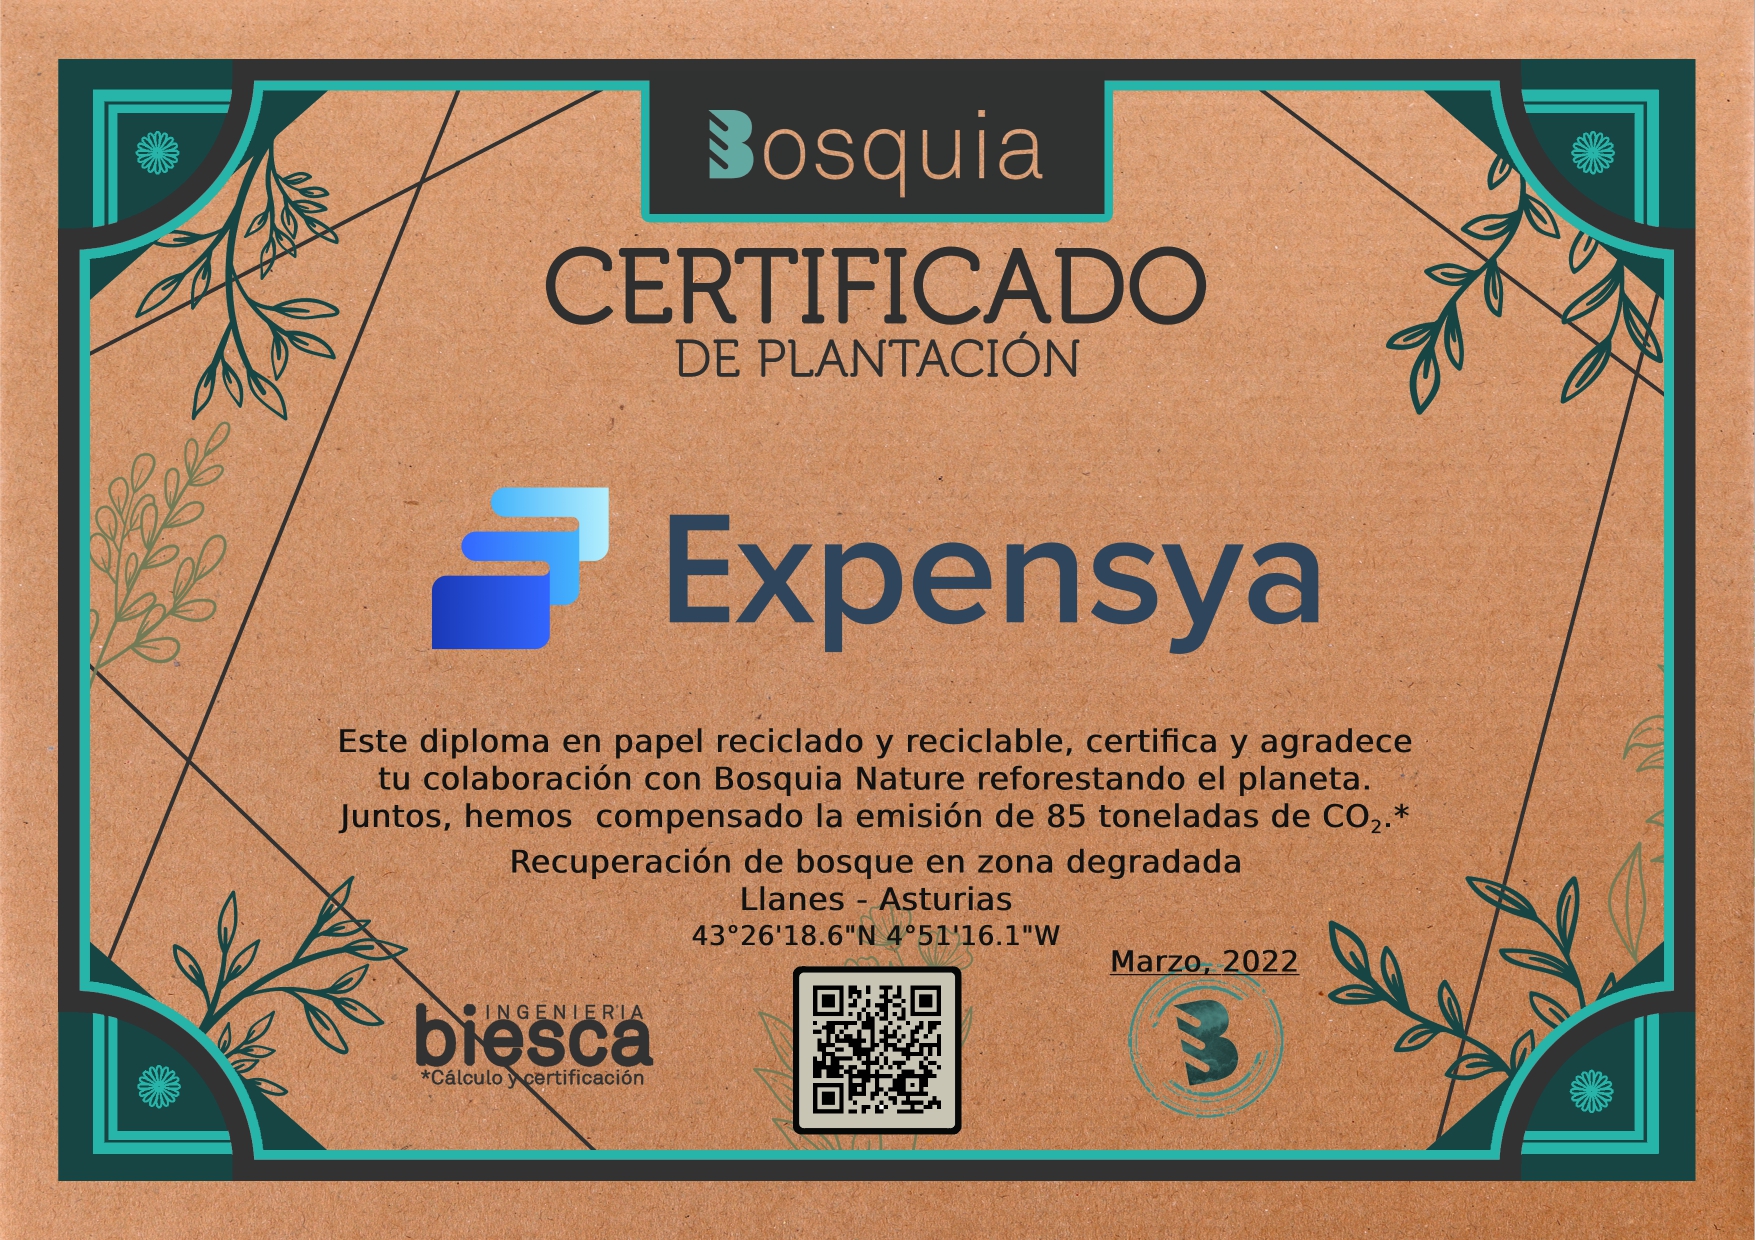 Certificado Corporativo Expensya (2)_page-0001-1